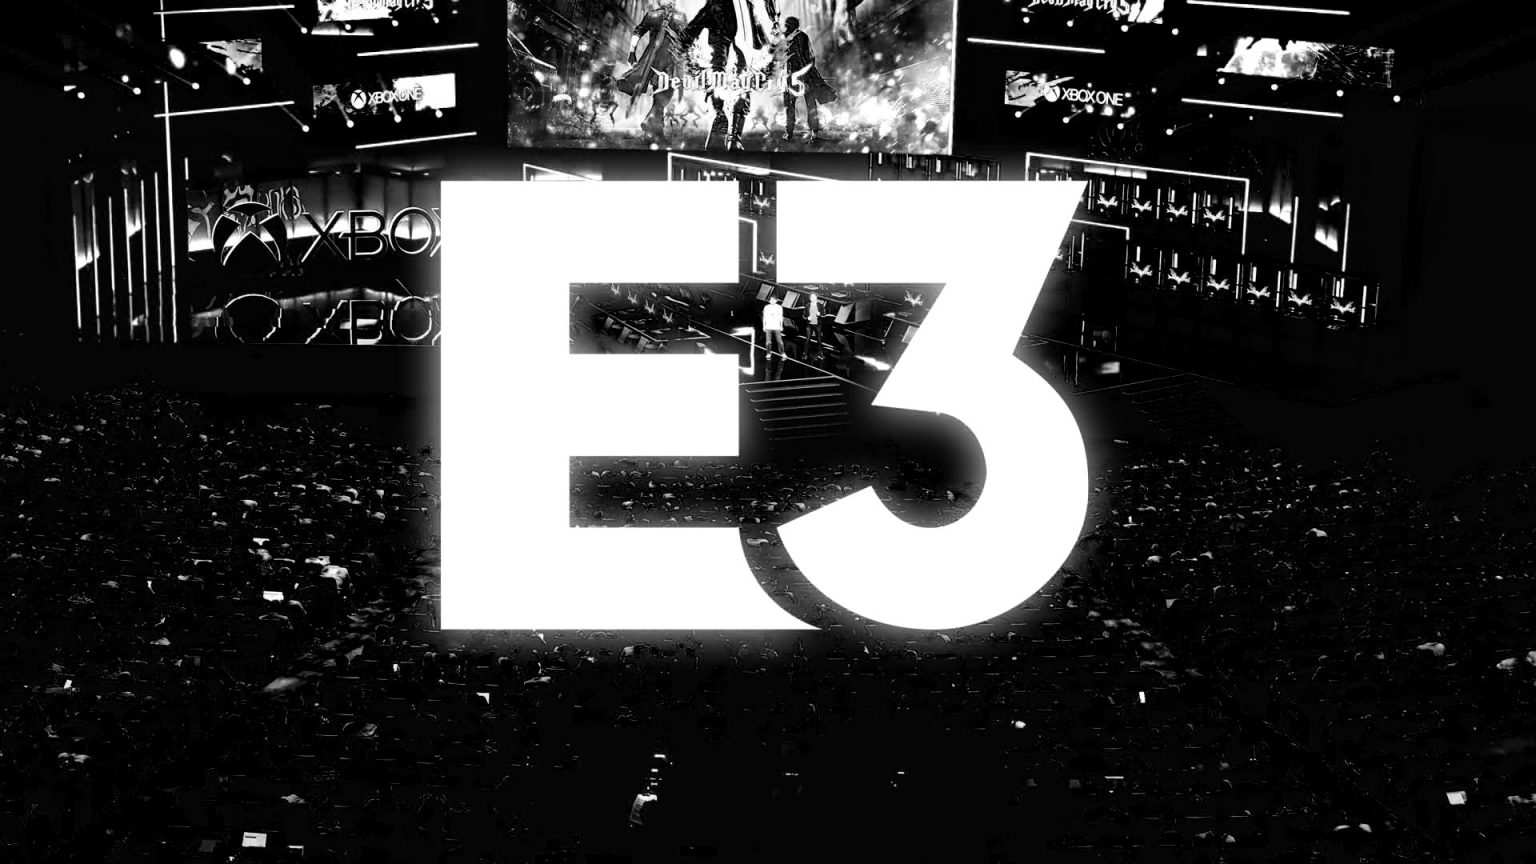 La ESA ha confirmado que el E3 2022 será virtual. En este artículo de opinión contamos algunas cosas a mejorar.